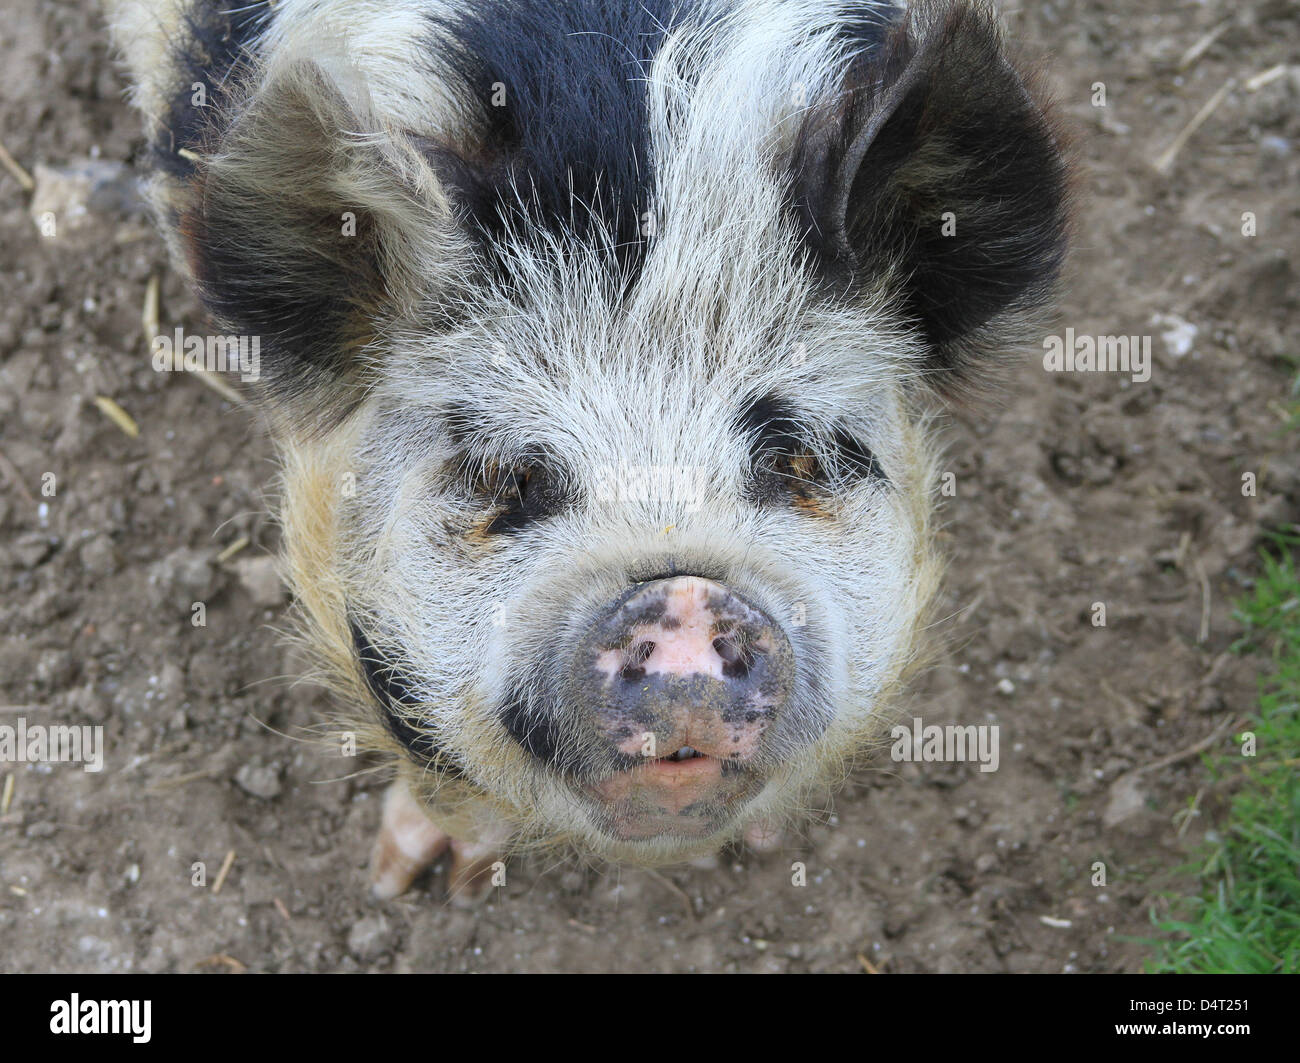 Friendly Pig au un sanctuaire Banque D'Images